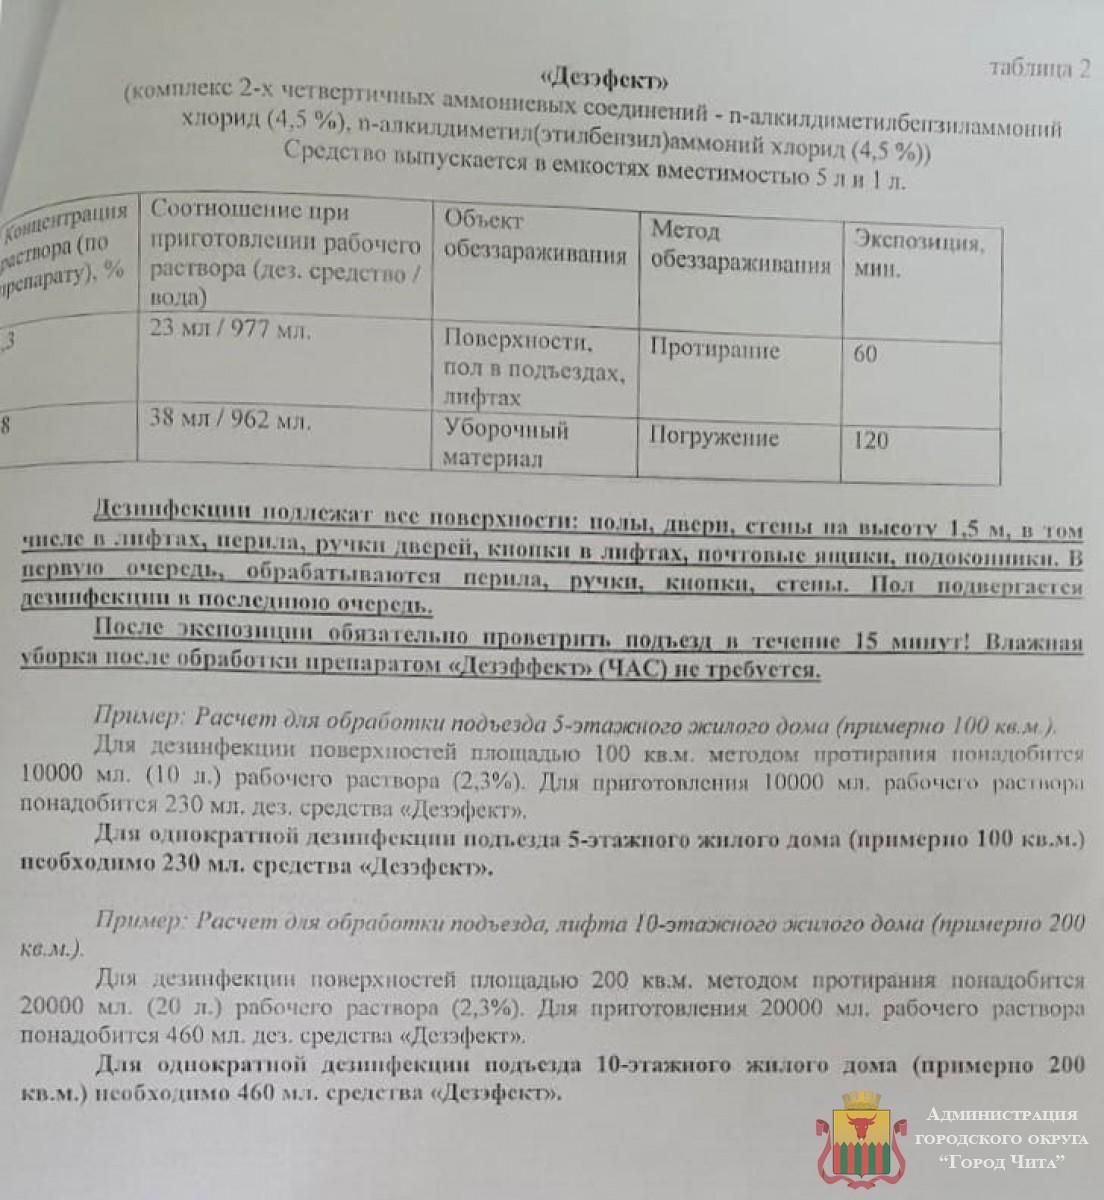 Сапожников рекомендовал УК и ТСЖ Читы проводить ежедневную дезинфекцию подъездов в домах